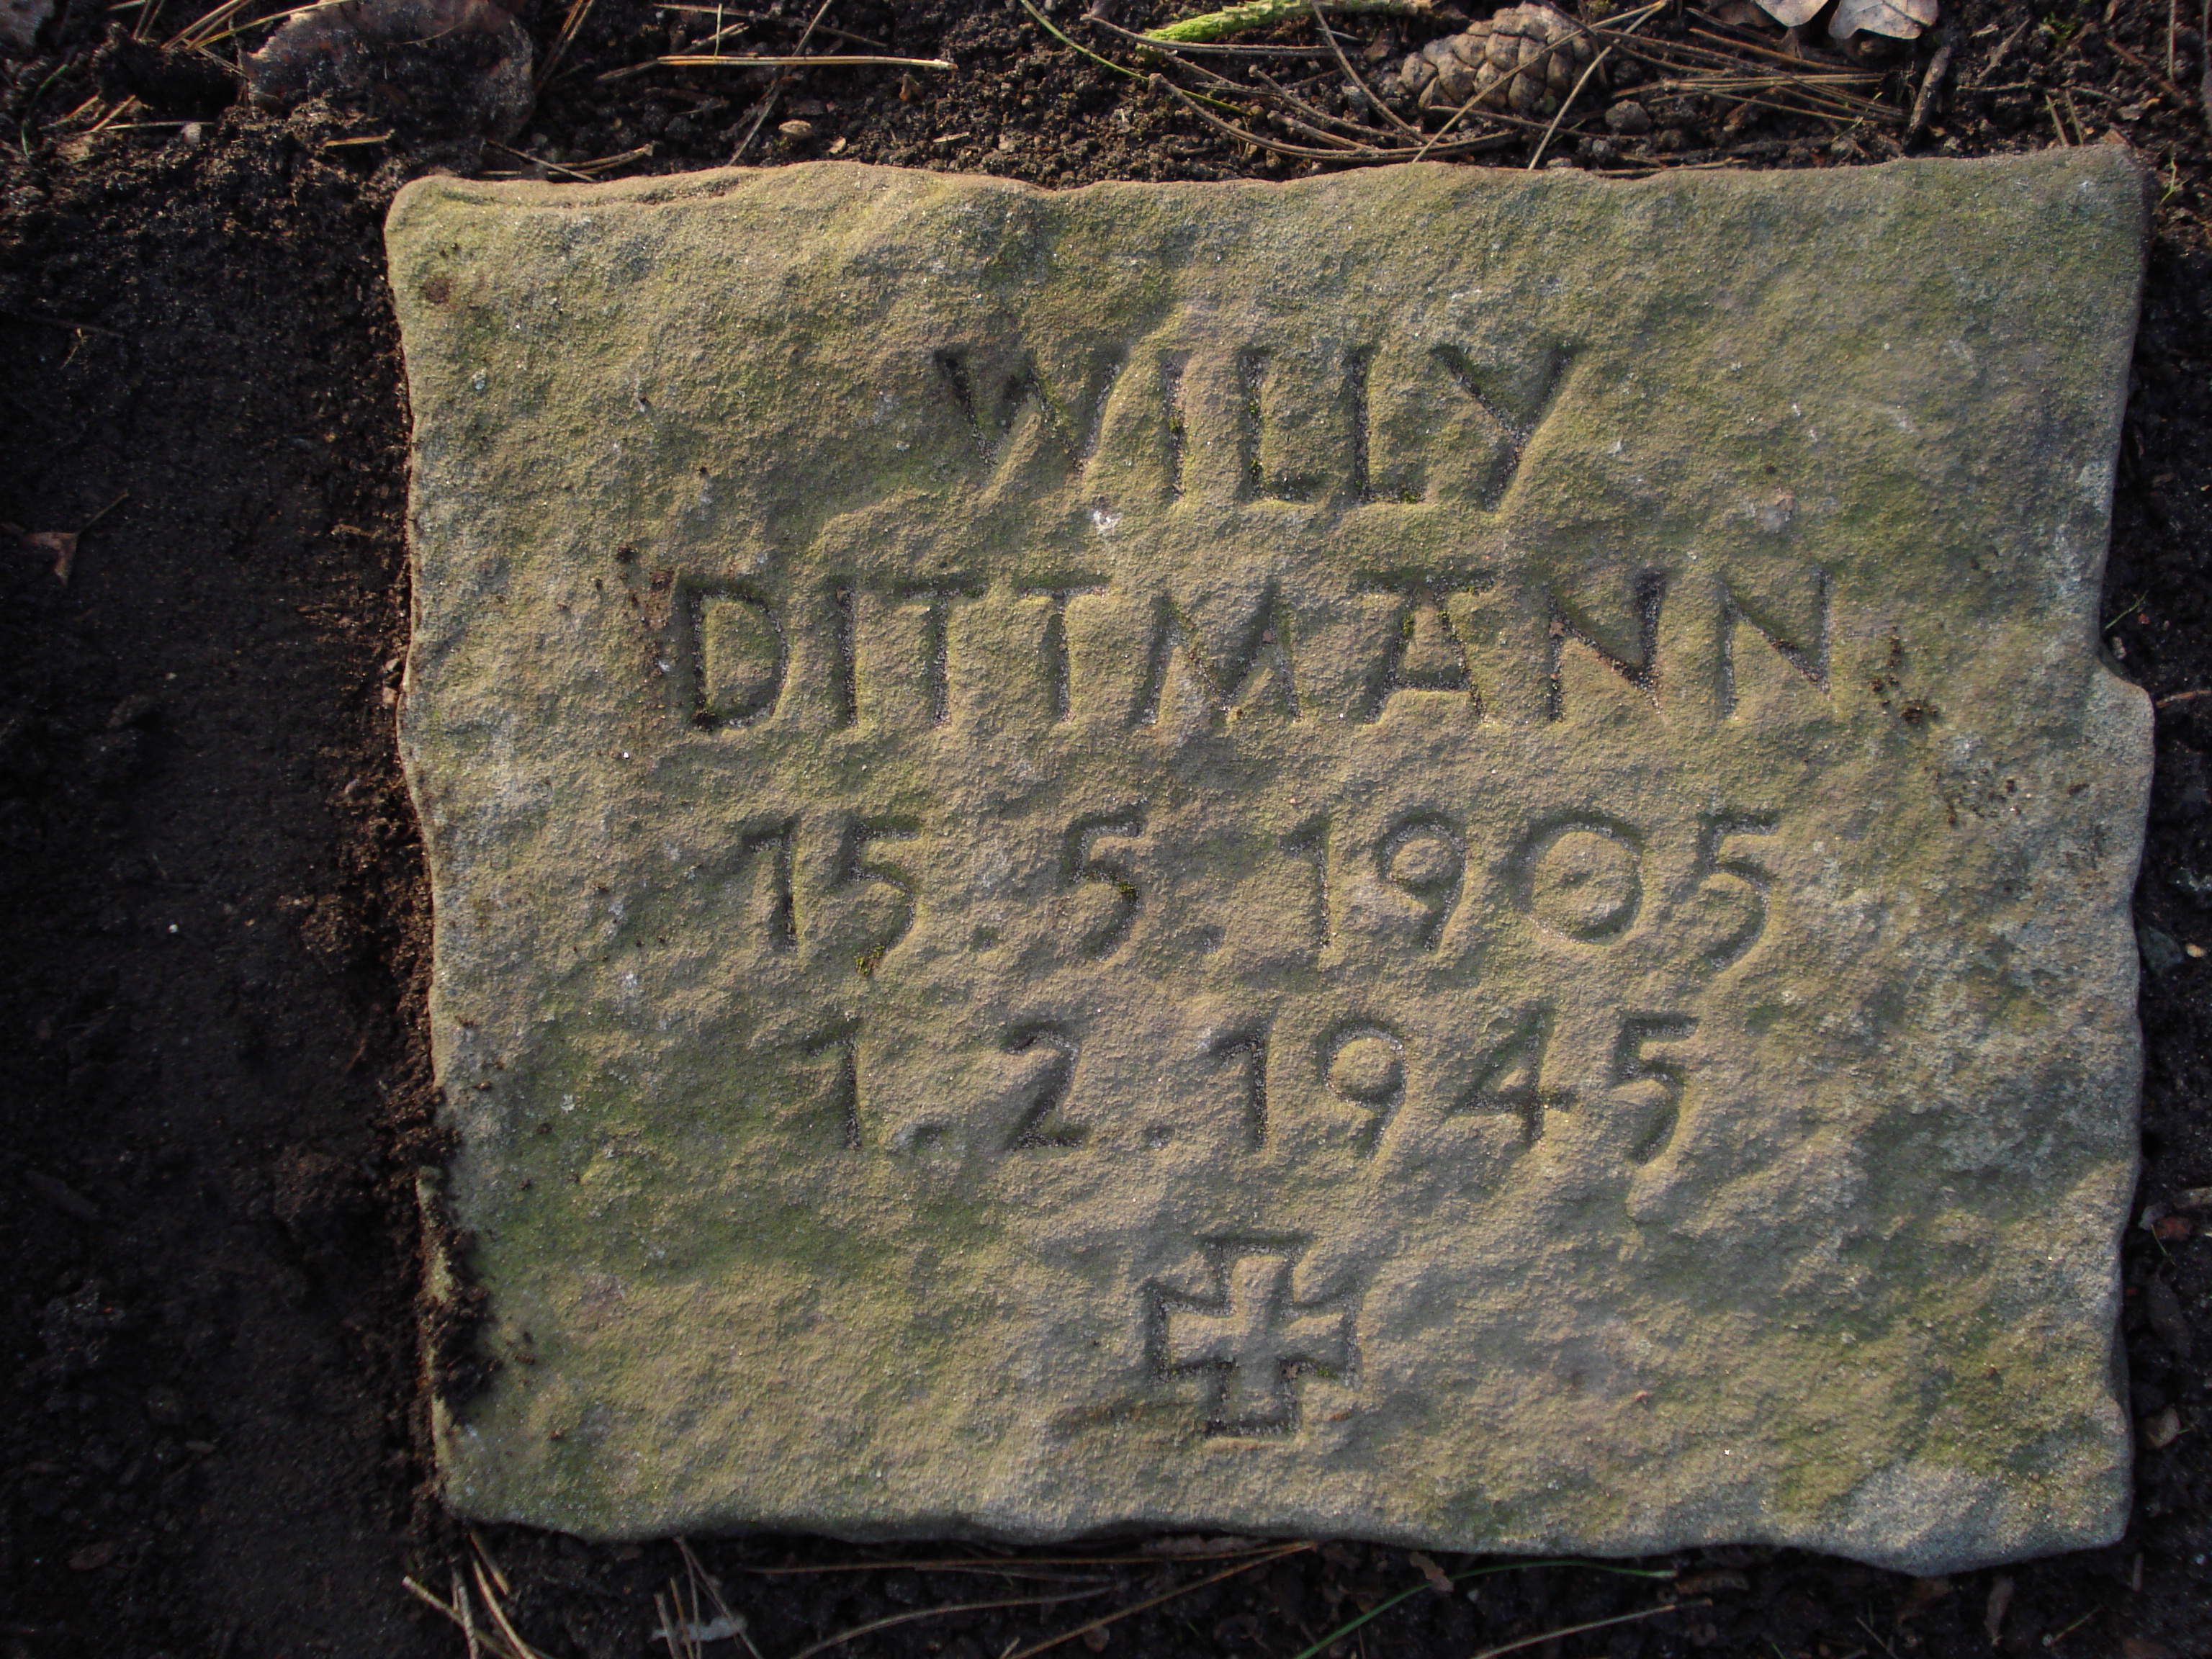 Grabplatte auf dem Friedhof Ohlsdorf. Willy Dittmann, 15.5.1905, 1.2.1945